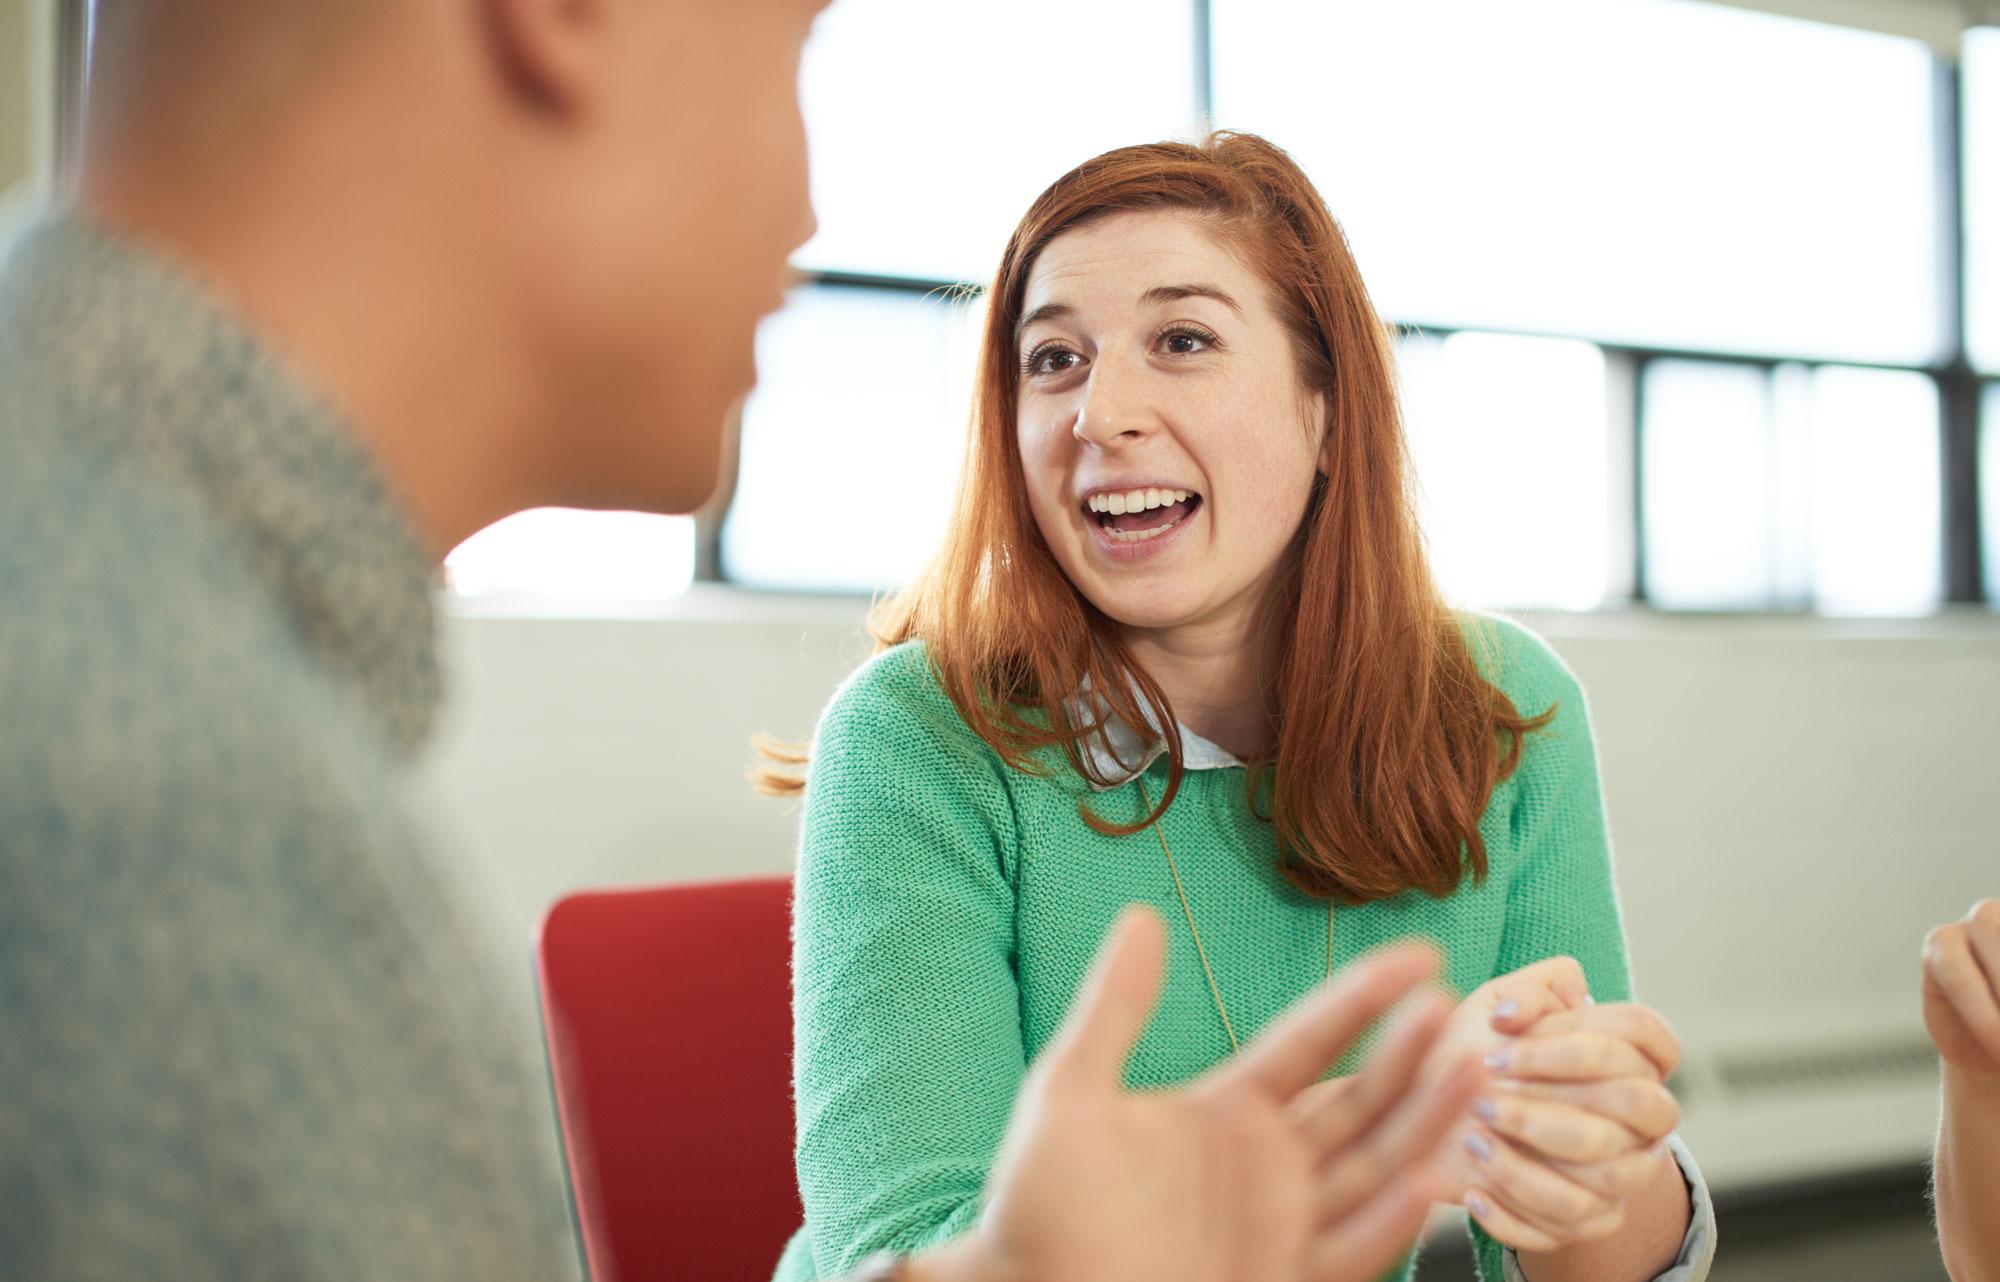 A female student talks with an advisor